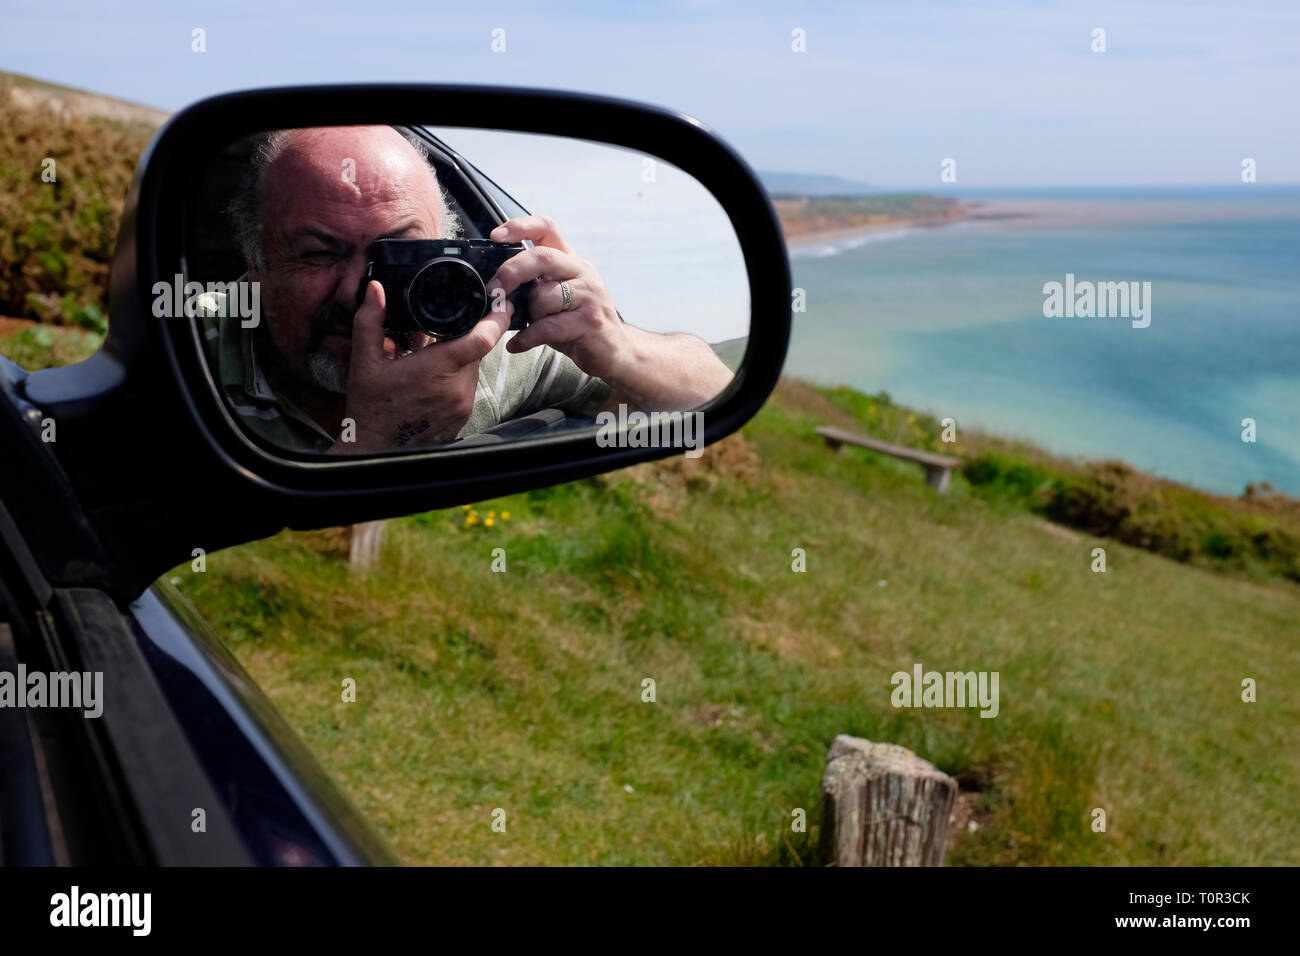 Fotograf, nehmen, Bild, von, Compton Bay, reflektiert, in, Auto, Seite, Spiegel, Isle of Wight, England, Vereinigtes Königreich, Stockfoto